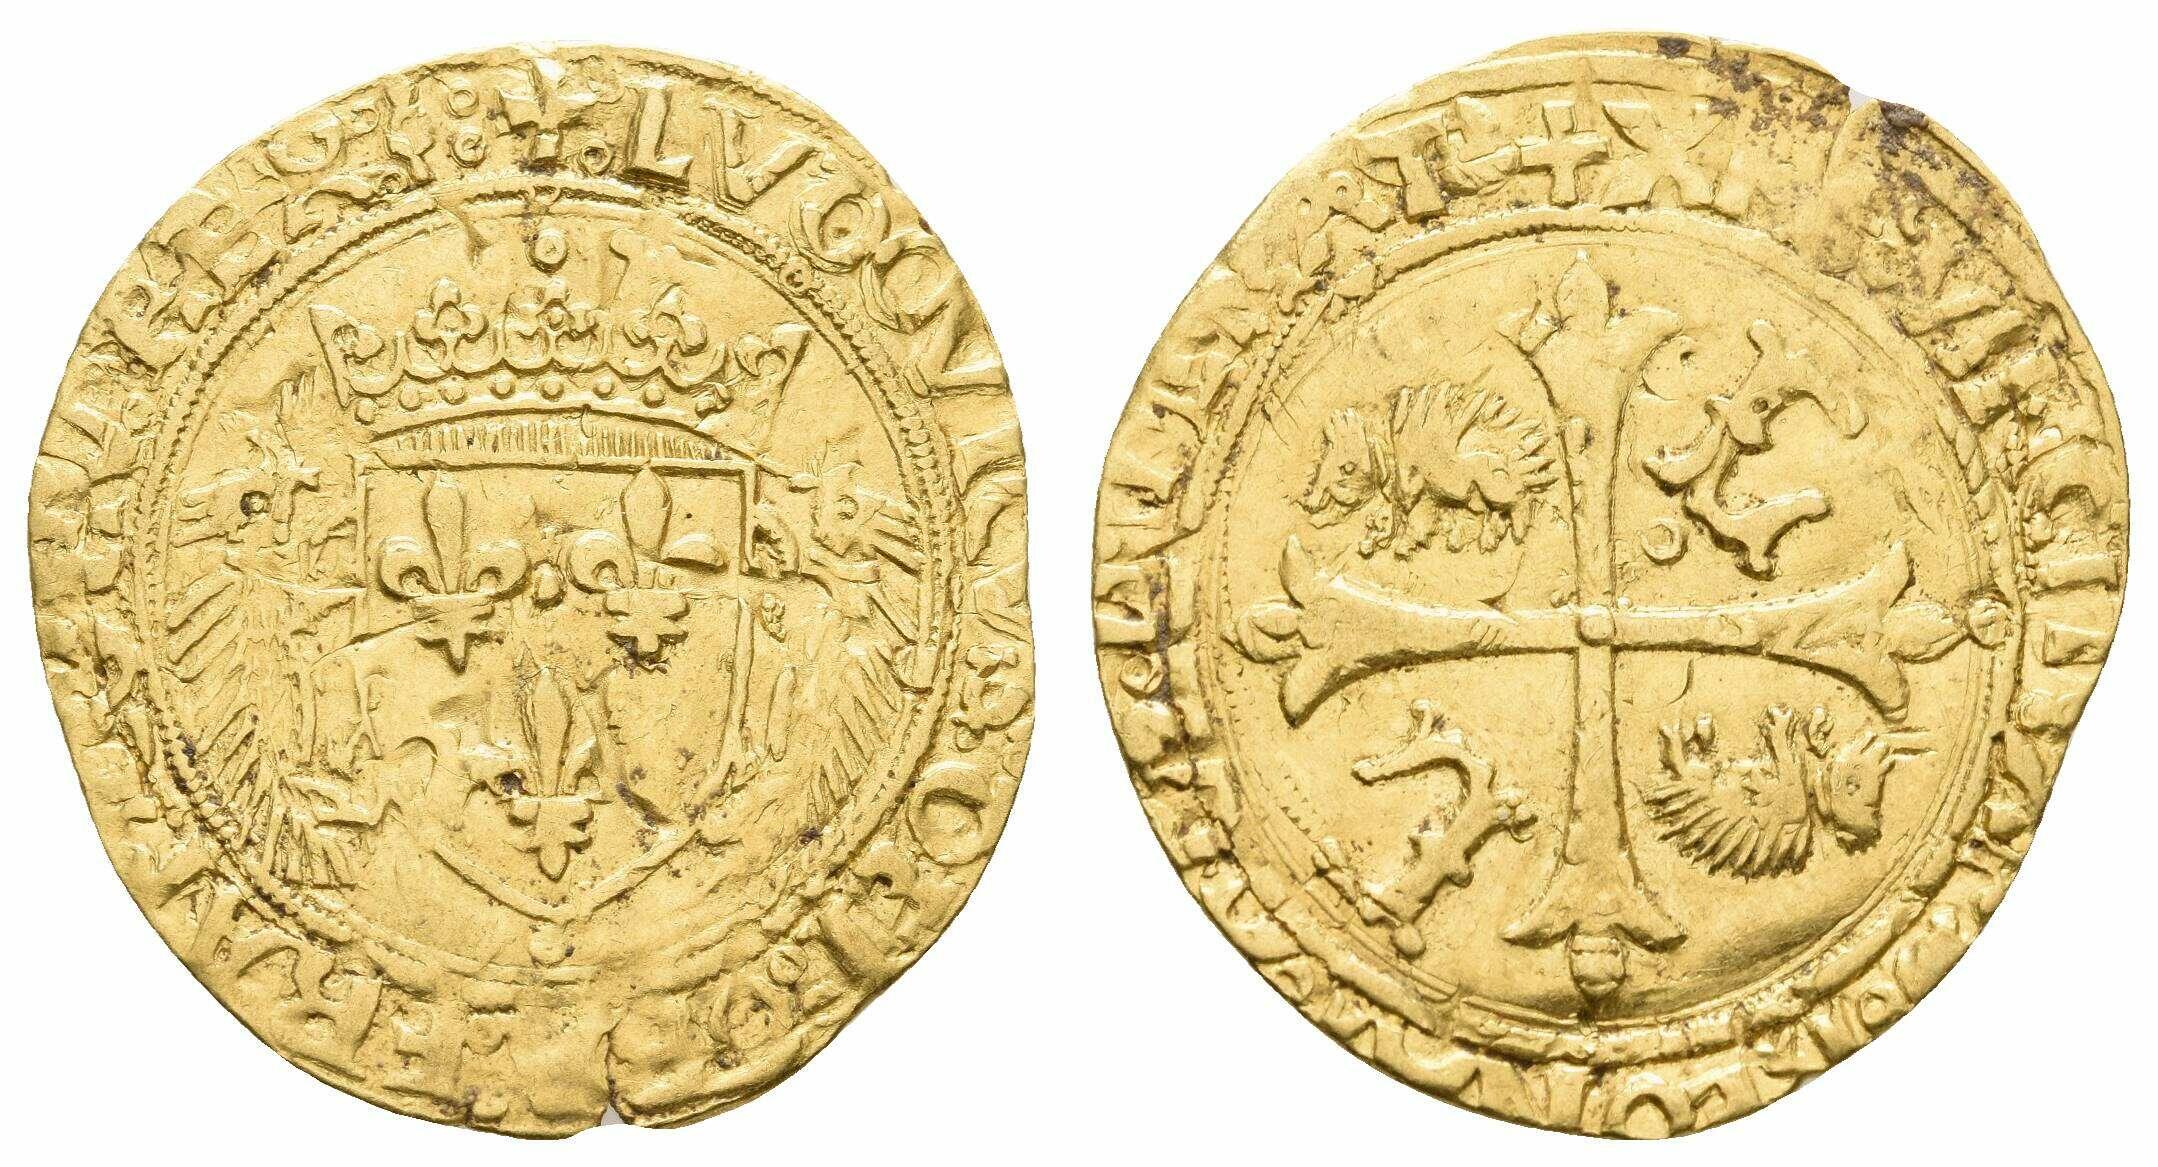 40.110.10.240: Europa - Frankreich - Königreich - Ludwig XII., 1498 - 1515